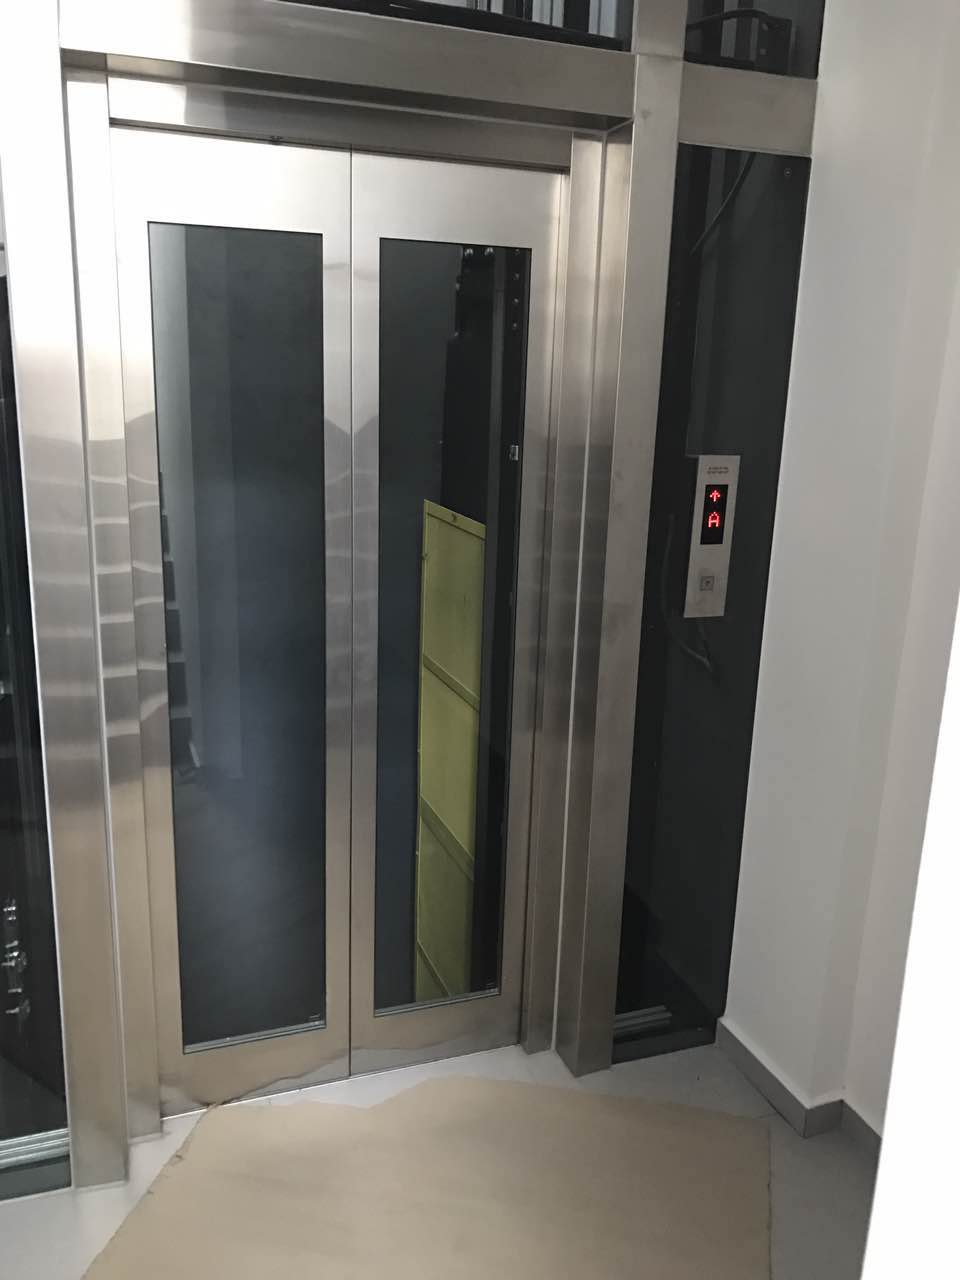 无机房有机房乘客电梯